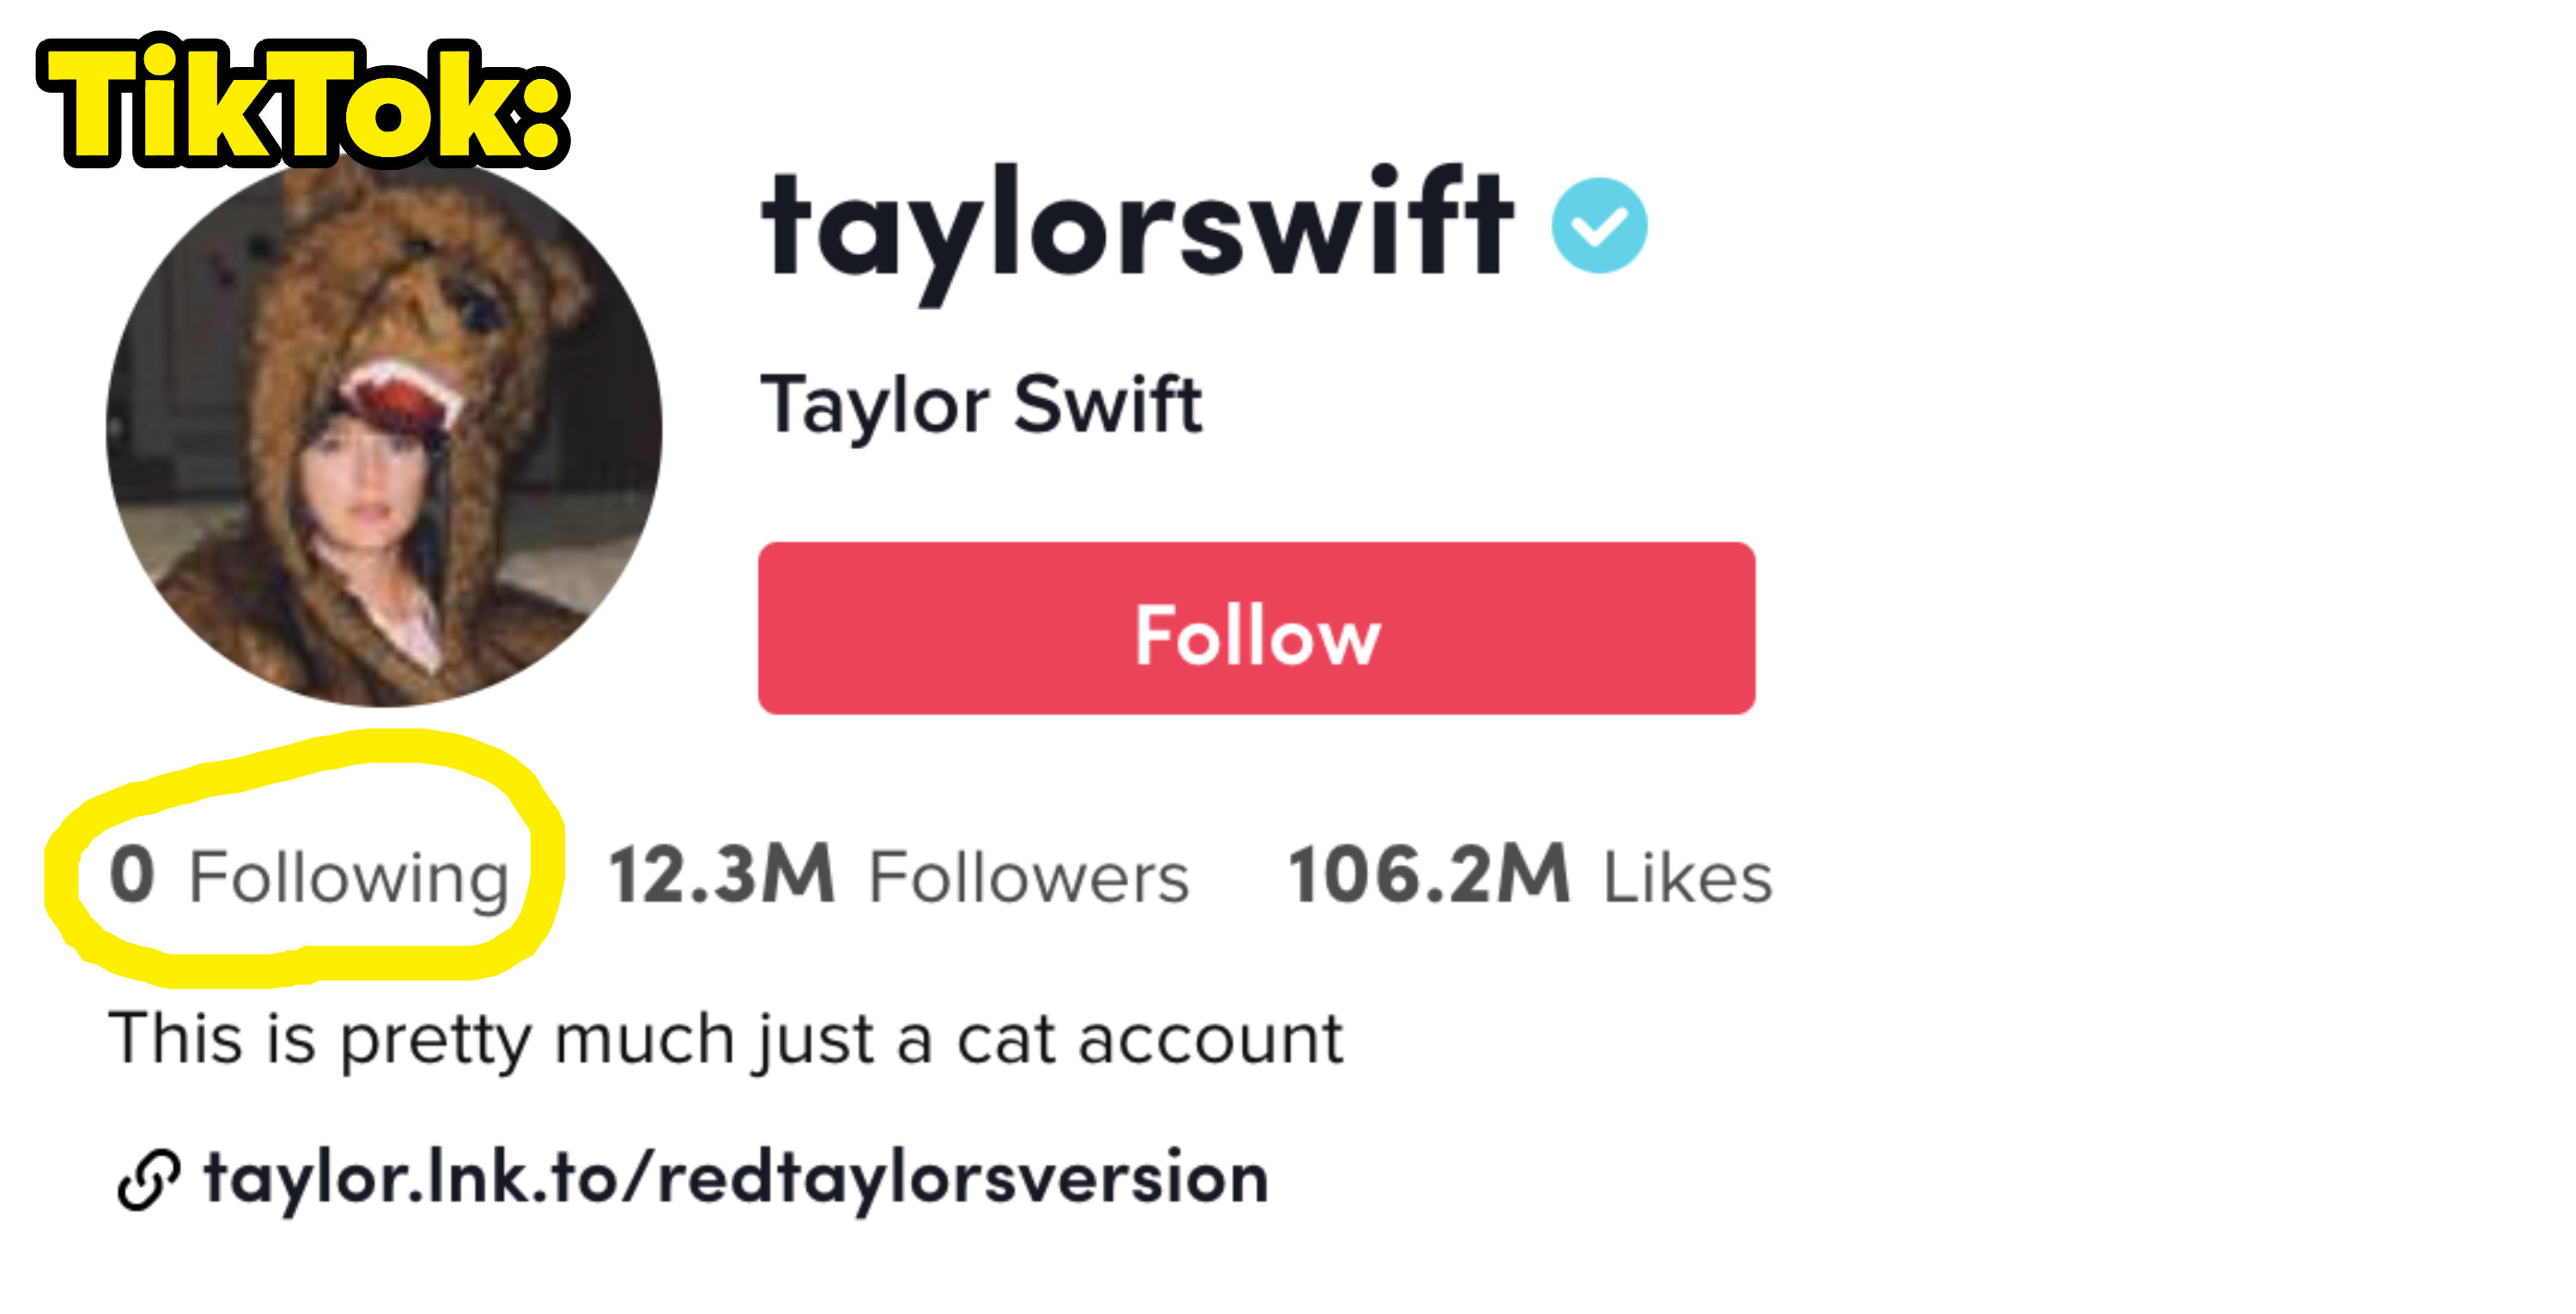 Taylor Swift following 0 people on TikTok